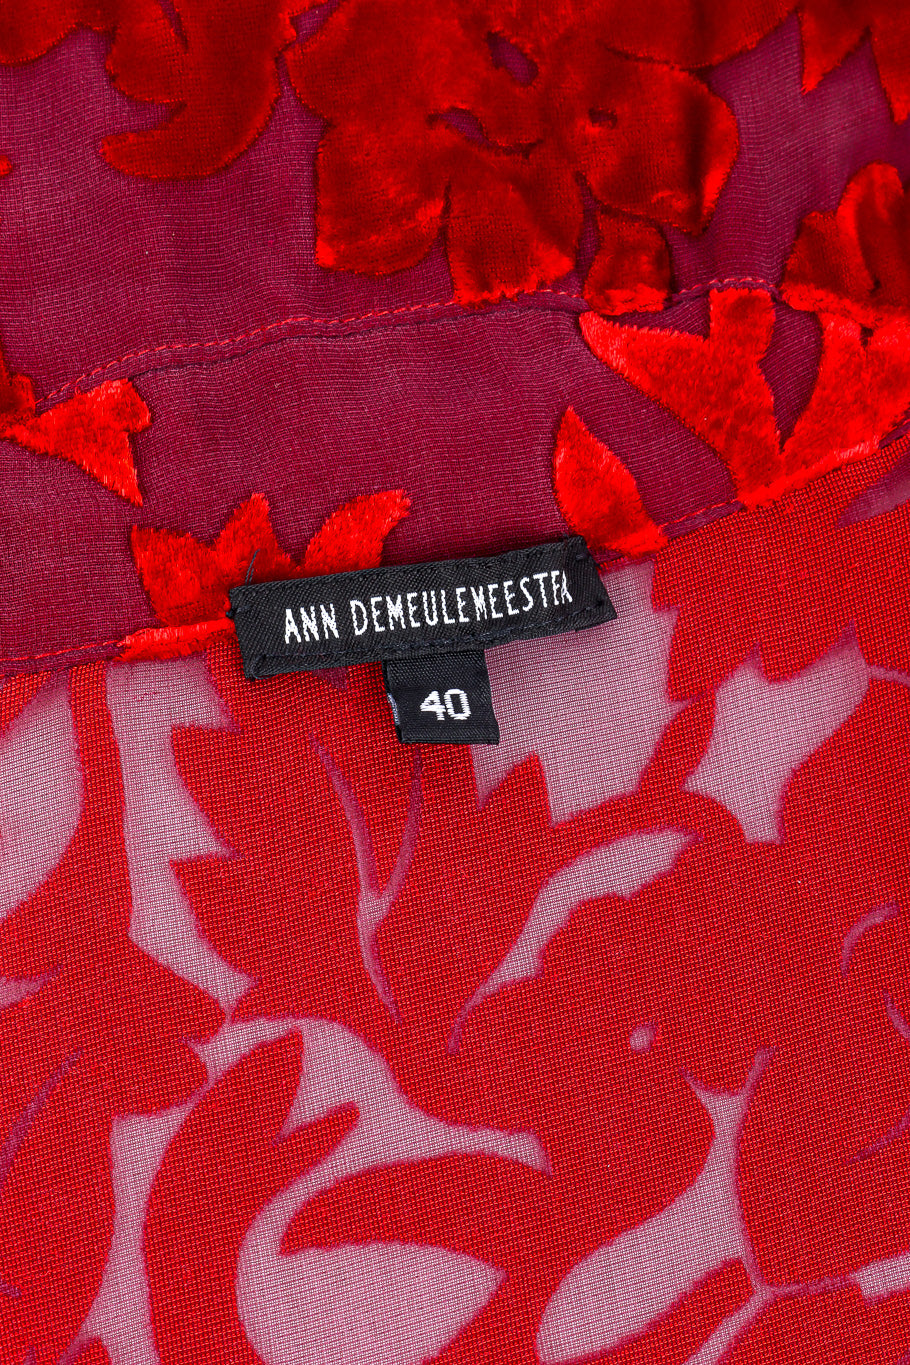 Ann Demeulemeester velvet robe jacket designer label and size @recessla